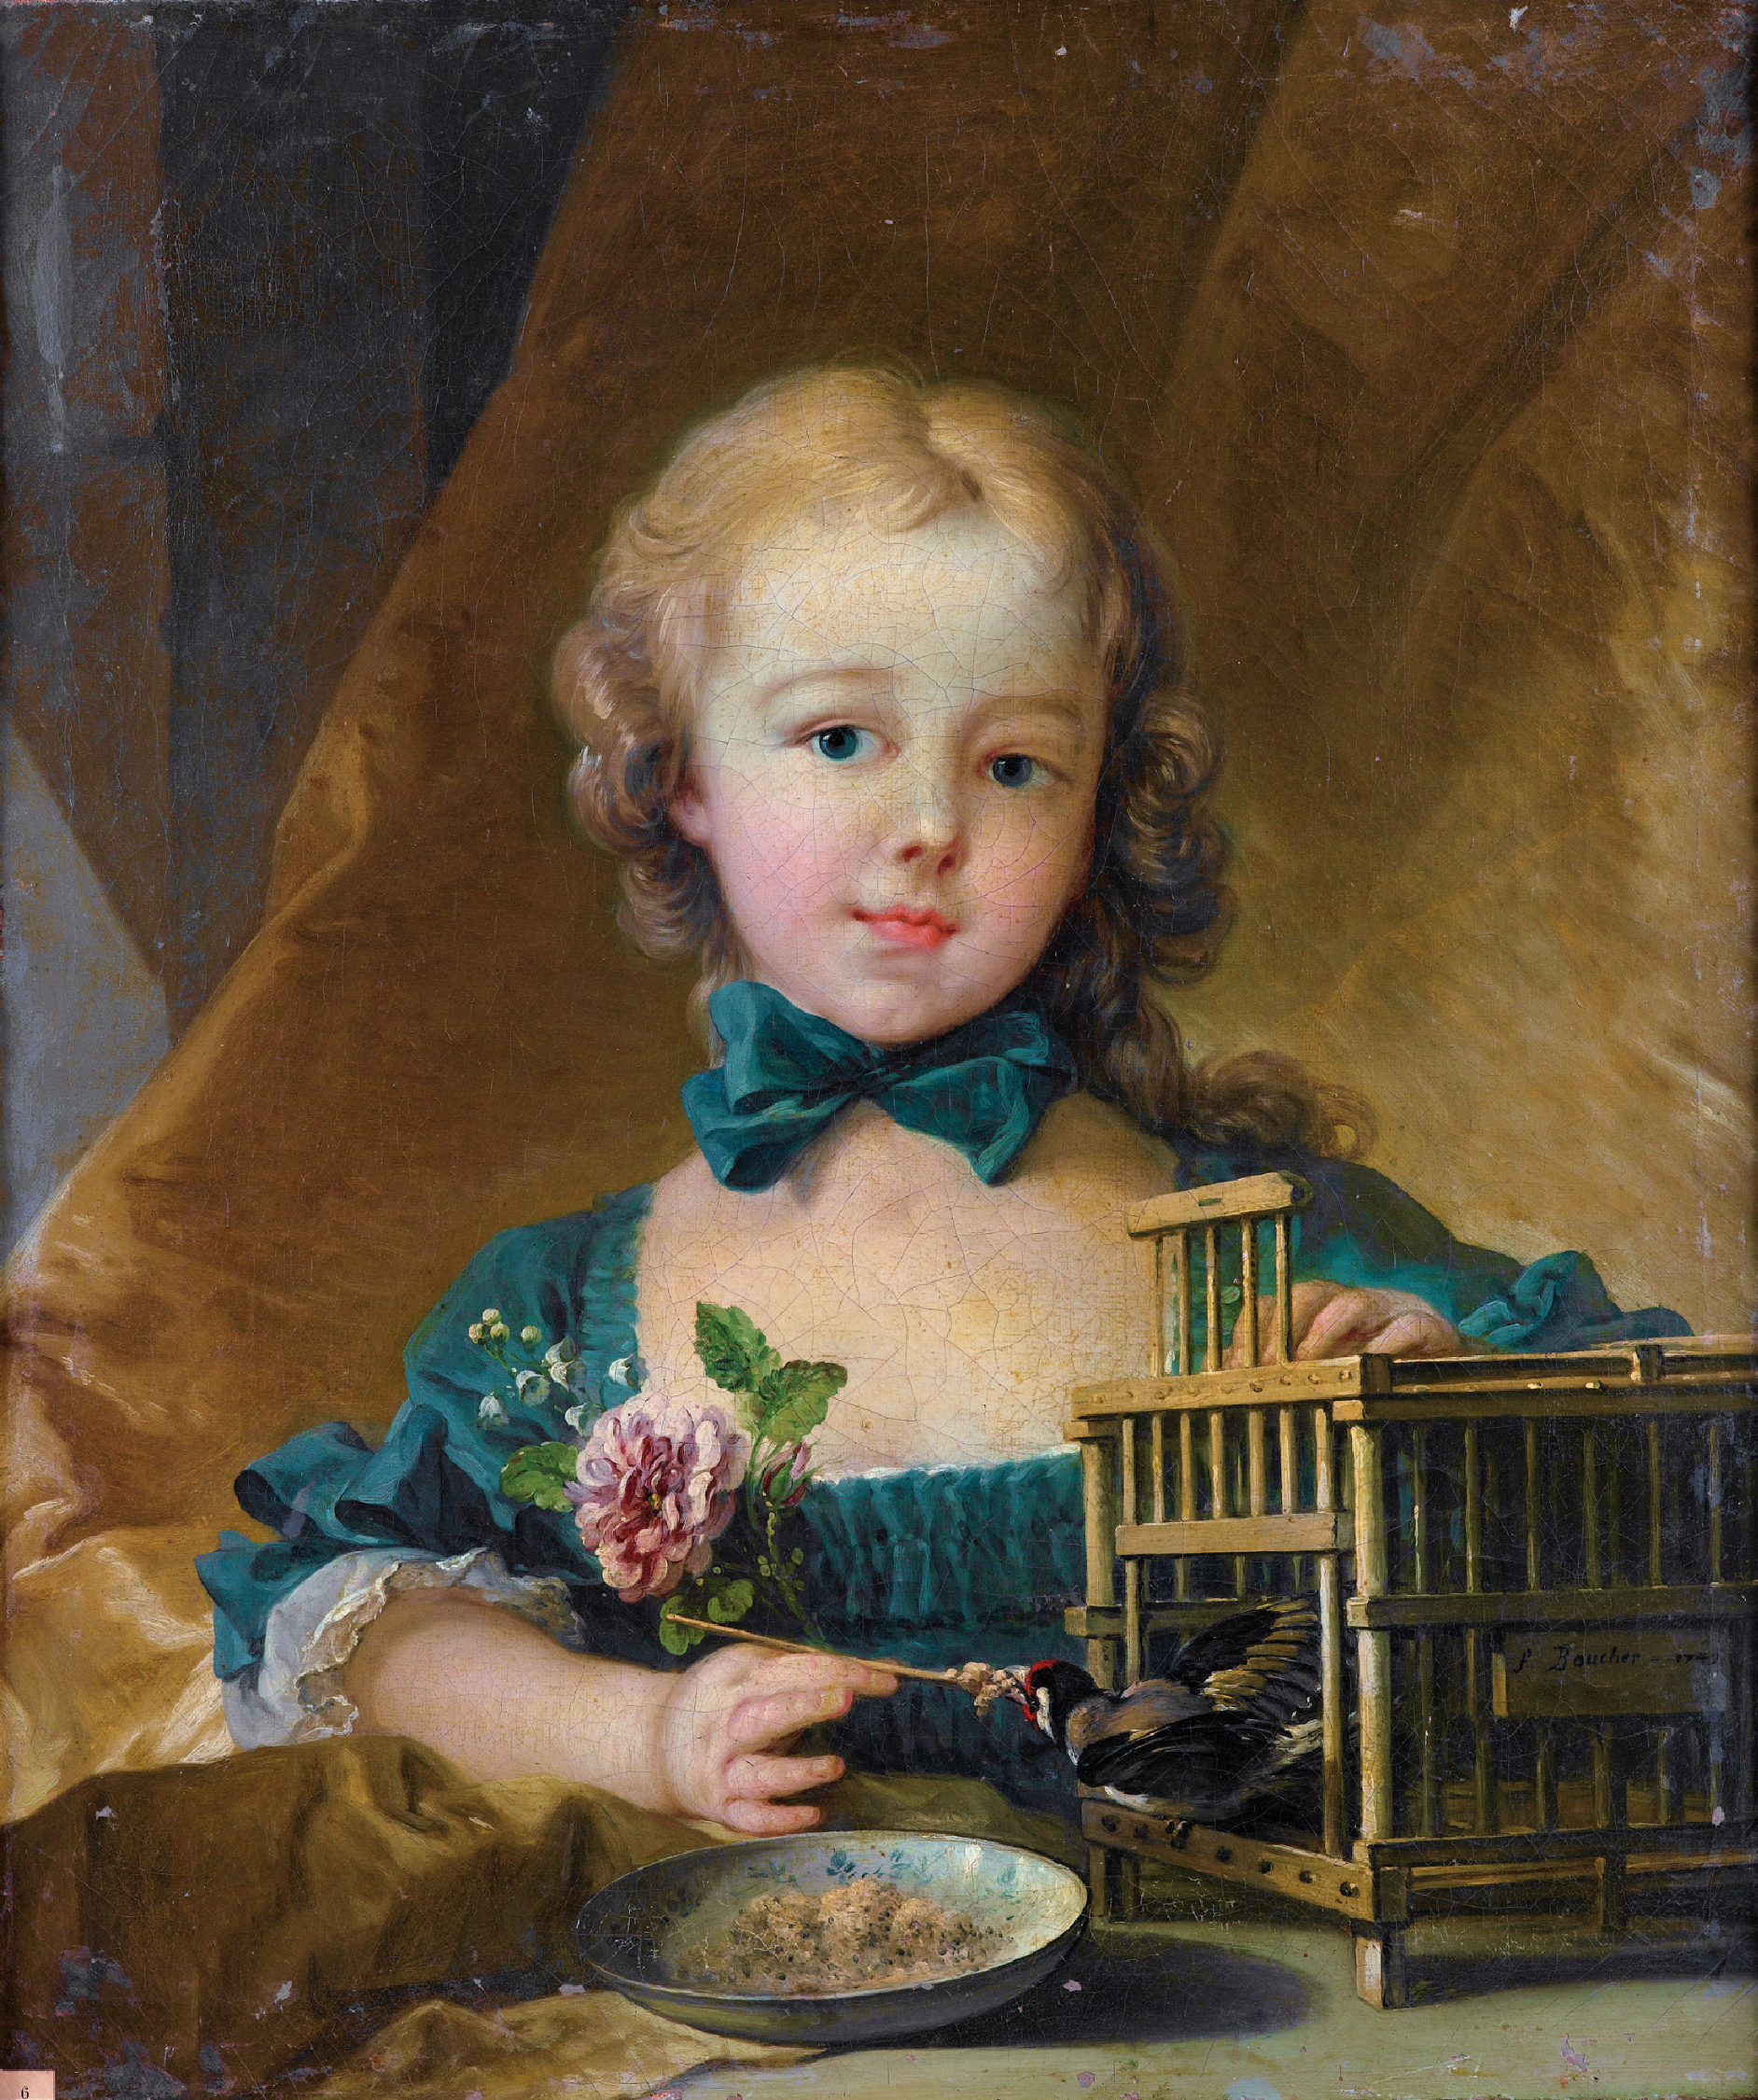 Alexandrine Lenormand d'Etiolles with a bird